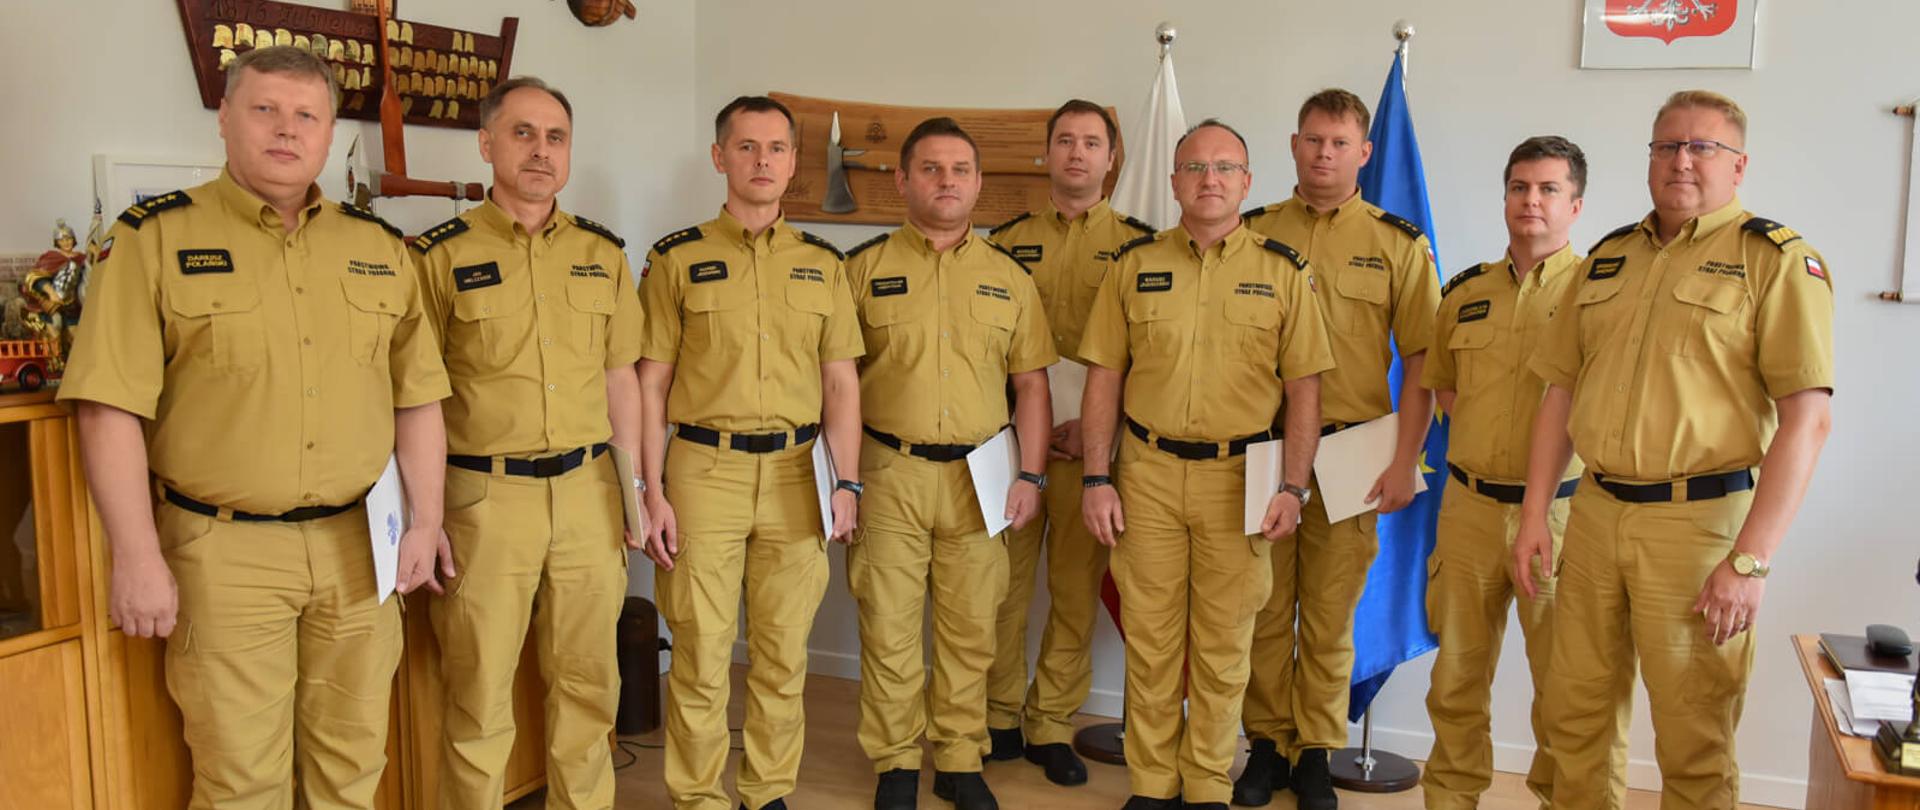 dziewięciu strażaków w piaskowych mundurach, w koszulach z krótkim rękawem pozuje do zdjęcia w sali, na sianach różne elementy ozdobne z motywami strażackimi 